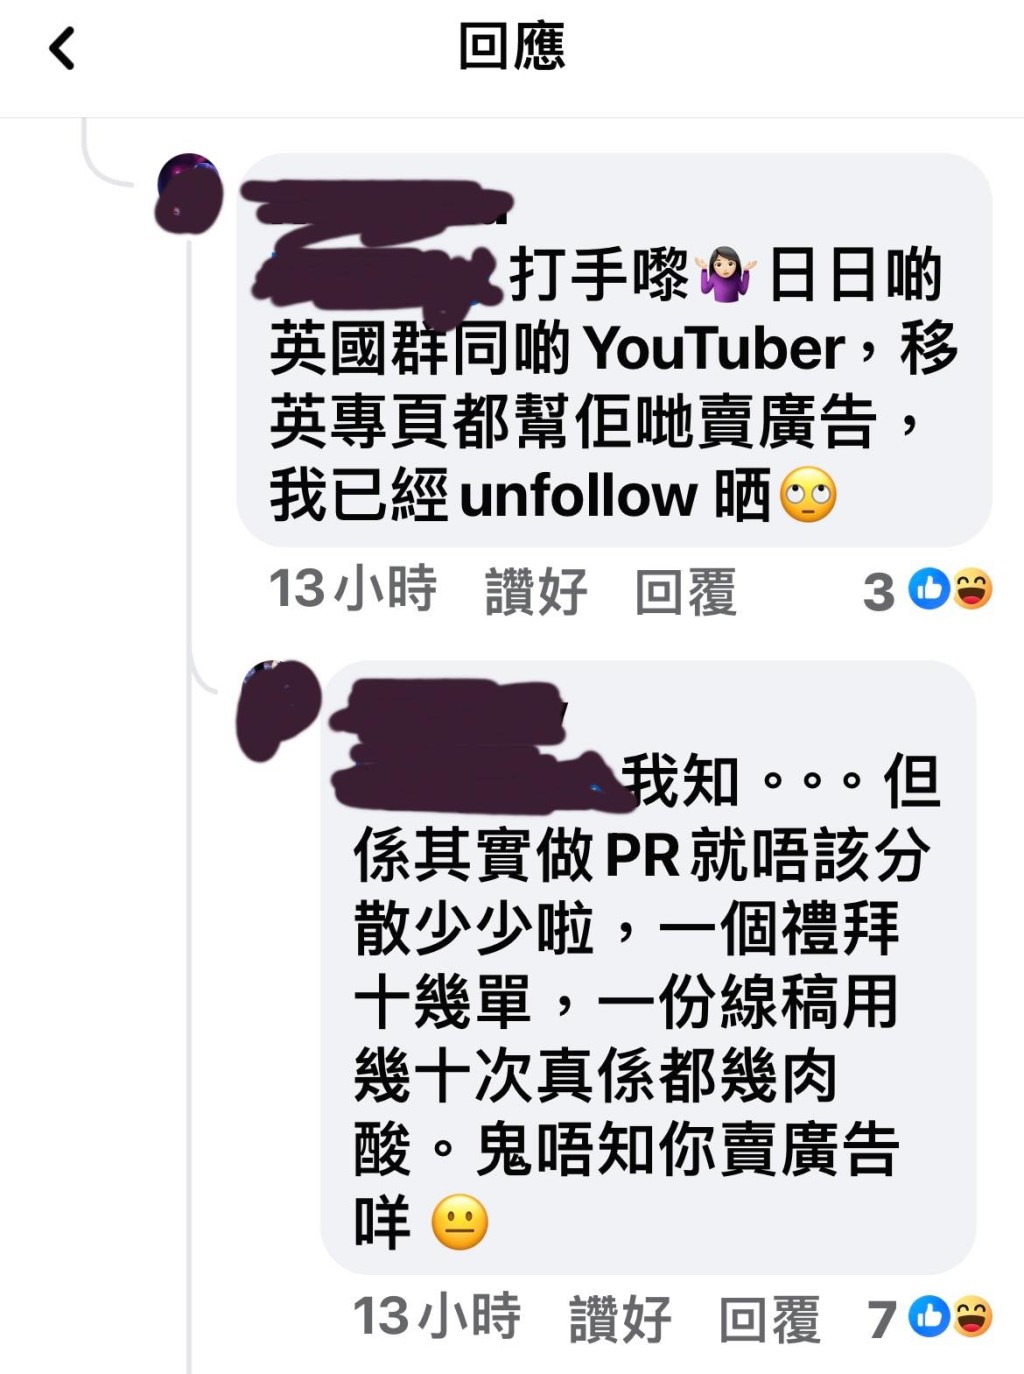 在網上投訴的事主上載多張投訴HKTVmall留言的截圖（圖片來源：Facebook）